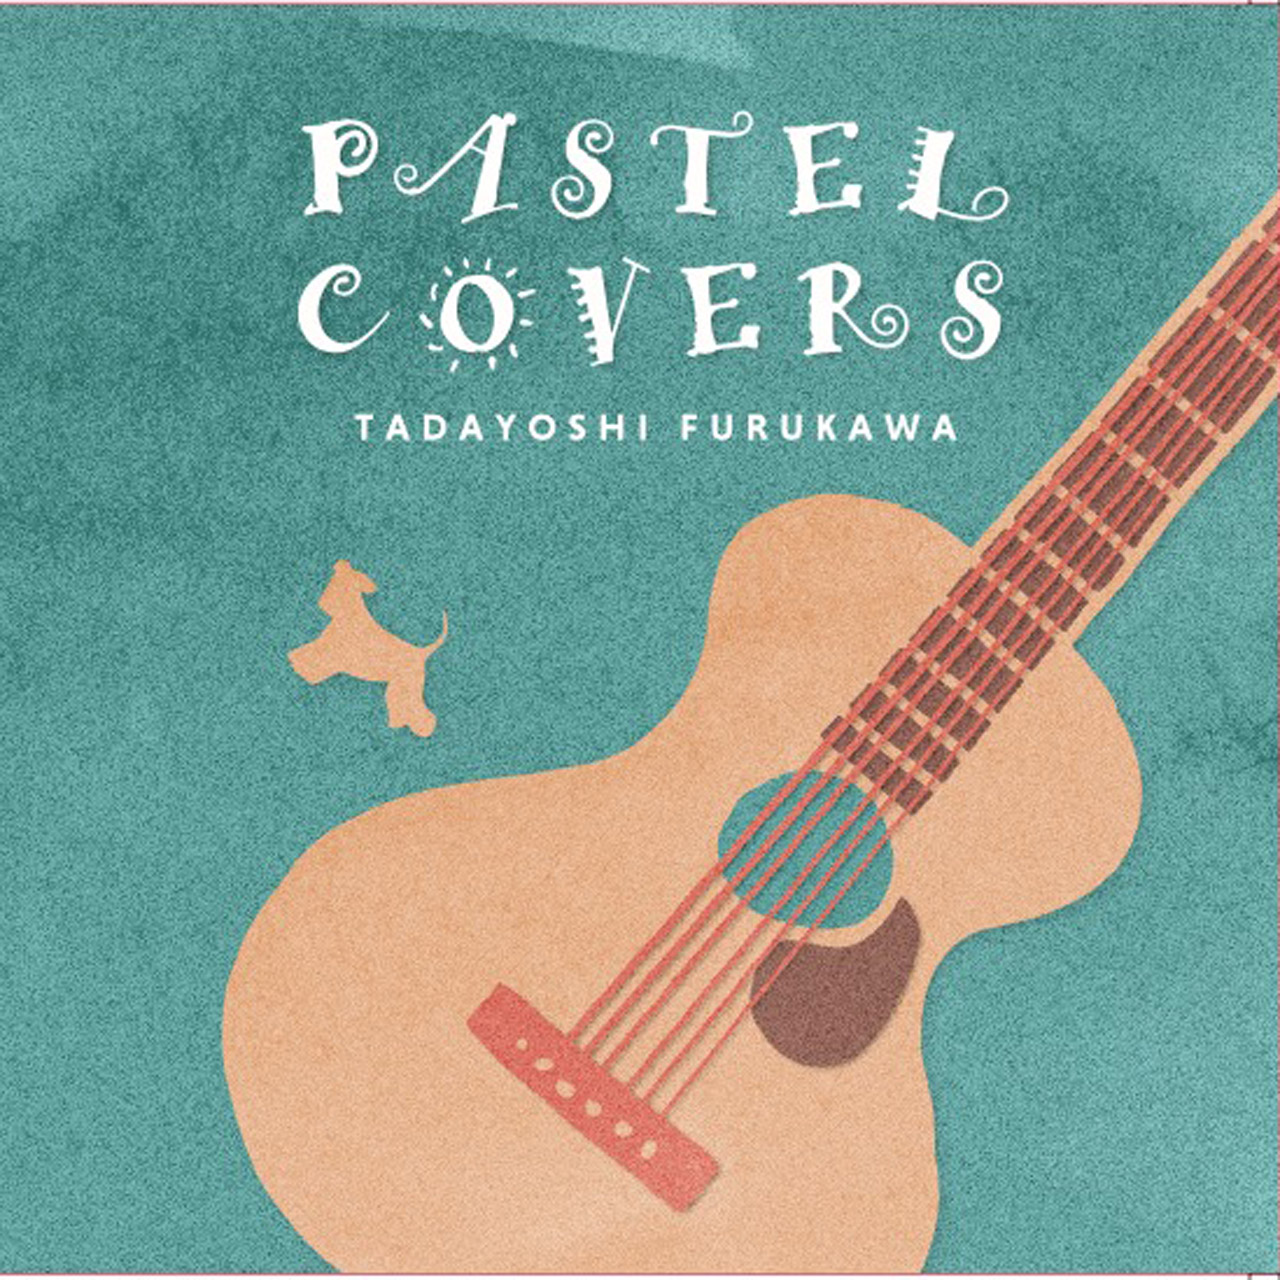 古川忠義・PASTEL COVERS・【音源CD+全曲TABデータCDの2枚組】